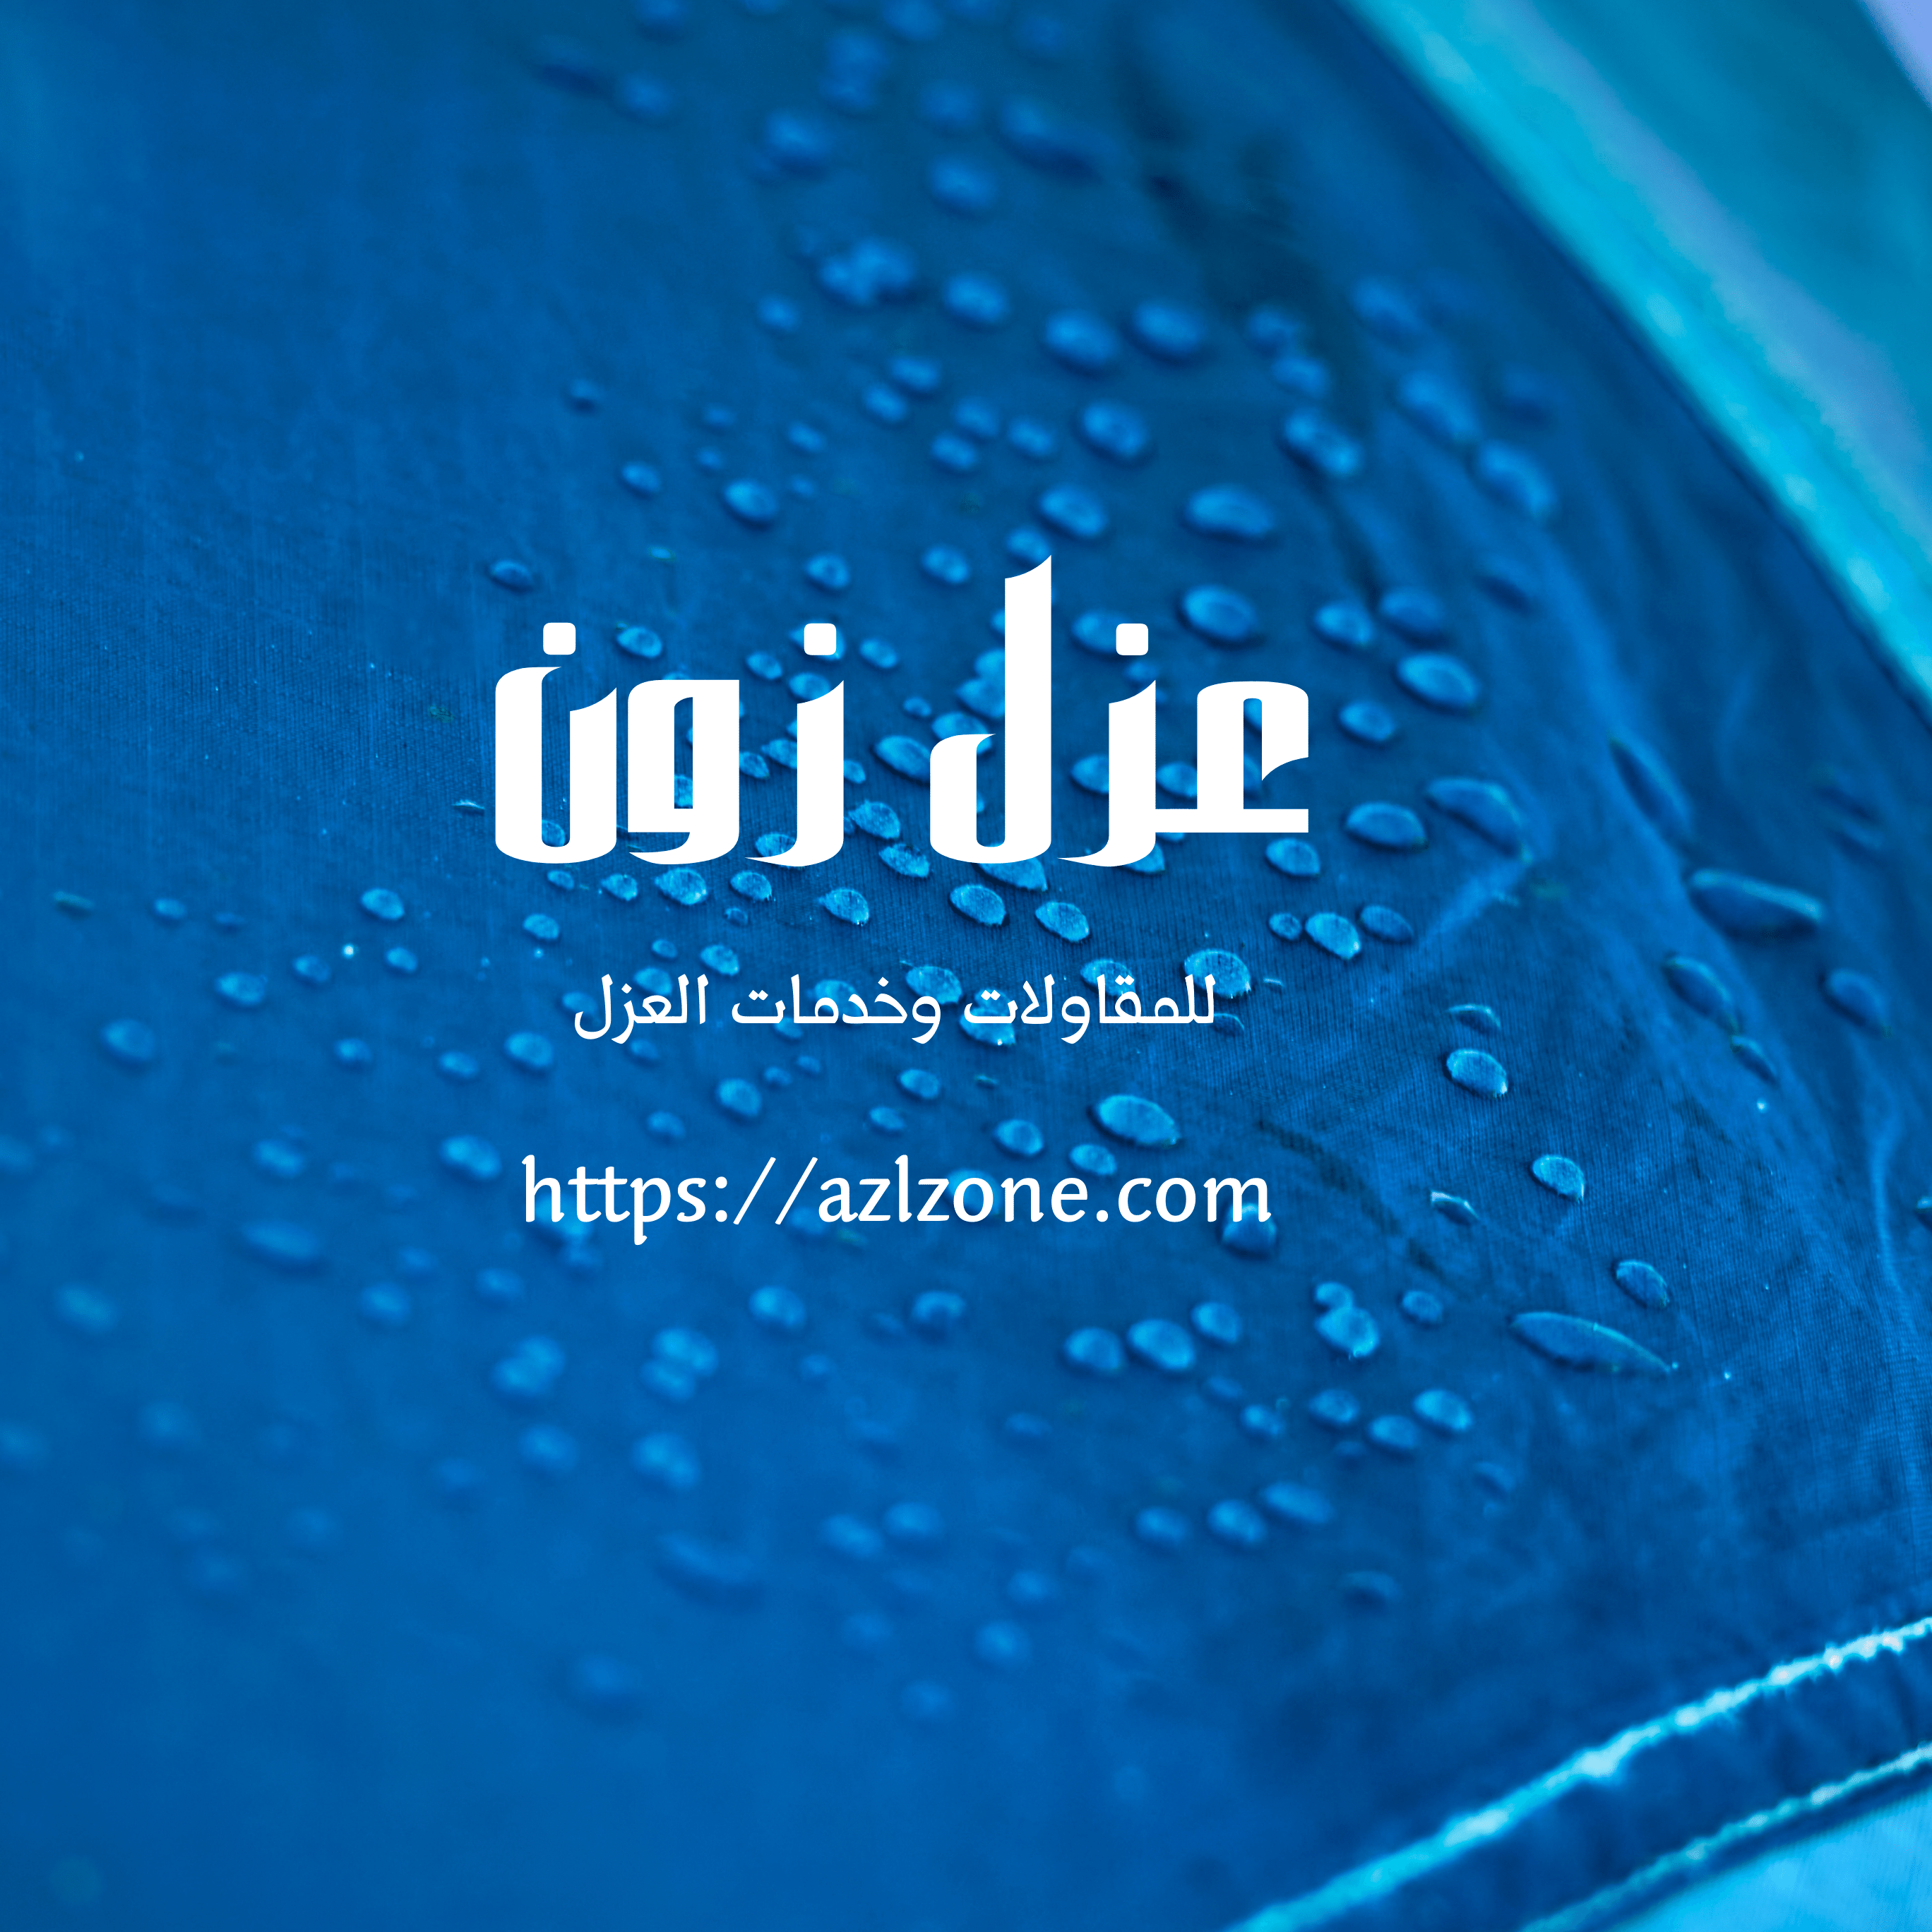 أفضل شركة عزل خزانات بخصب وسلطنة عمان عزل خزان مائي وتنظيف مياه الخزانات بخصب وصحار ولحام خزانات فيبر جلاس خصم 40%